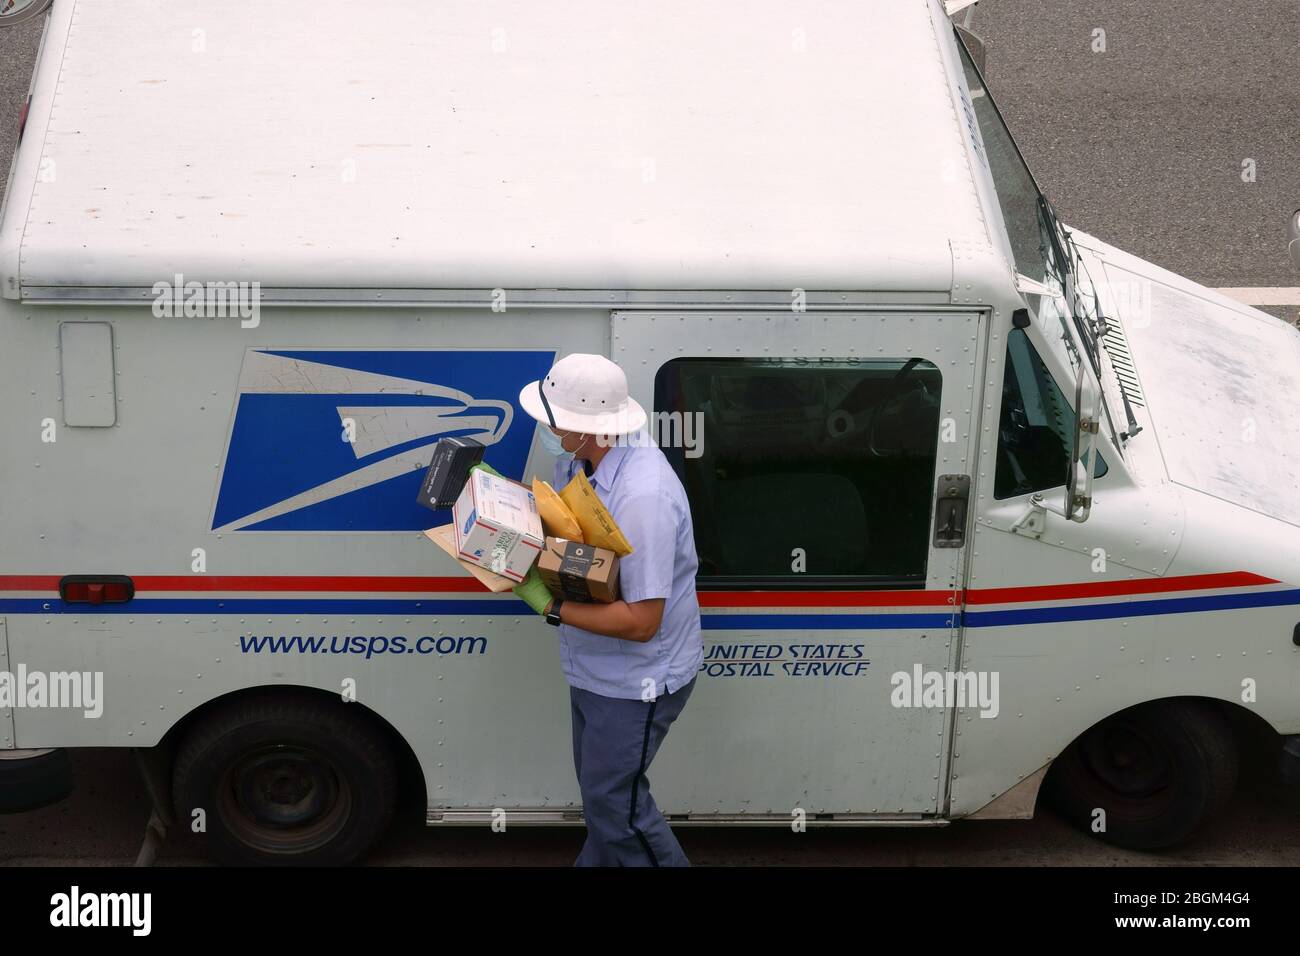 Los Angeles, CA / USA - 20 avril 2020: Un transporteur de courrier pour le Service postal des États-Unis USPS porte un masque et des gants pendant la pandémie COVID-19. Banque D'Images